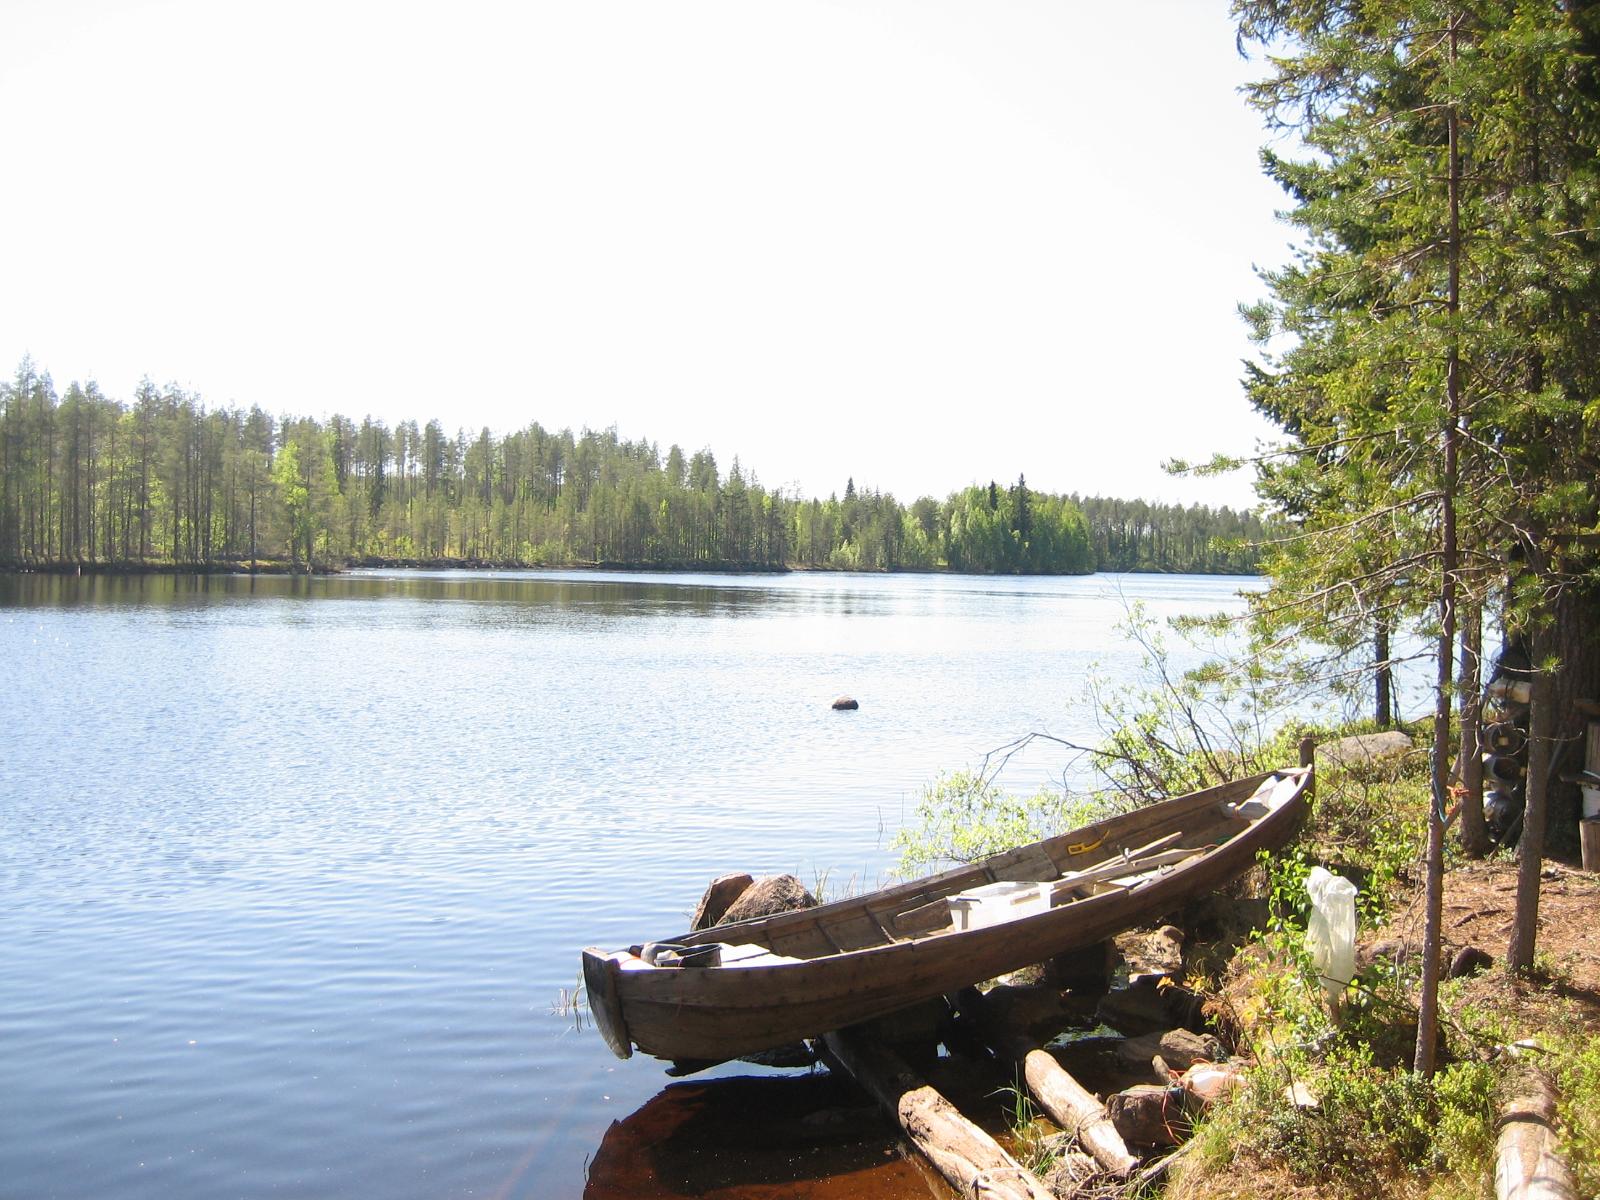 Kesäisessä järvimaisemassa puinen vene on vedetty maihin oikean laidan rantaan. Rannalla on mäntyjä.